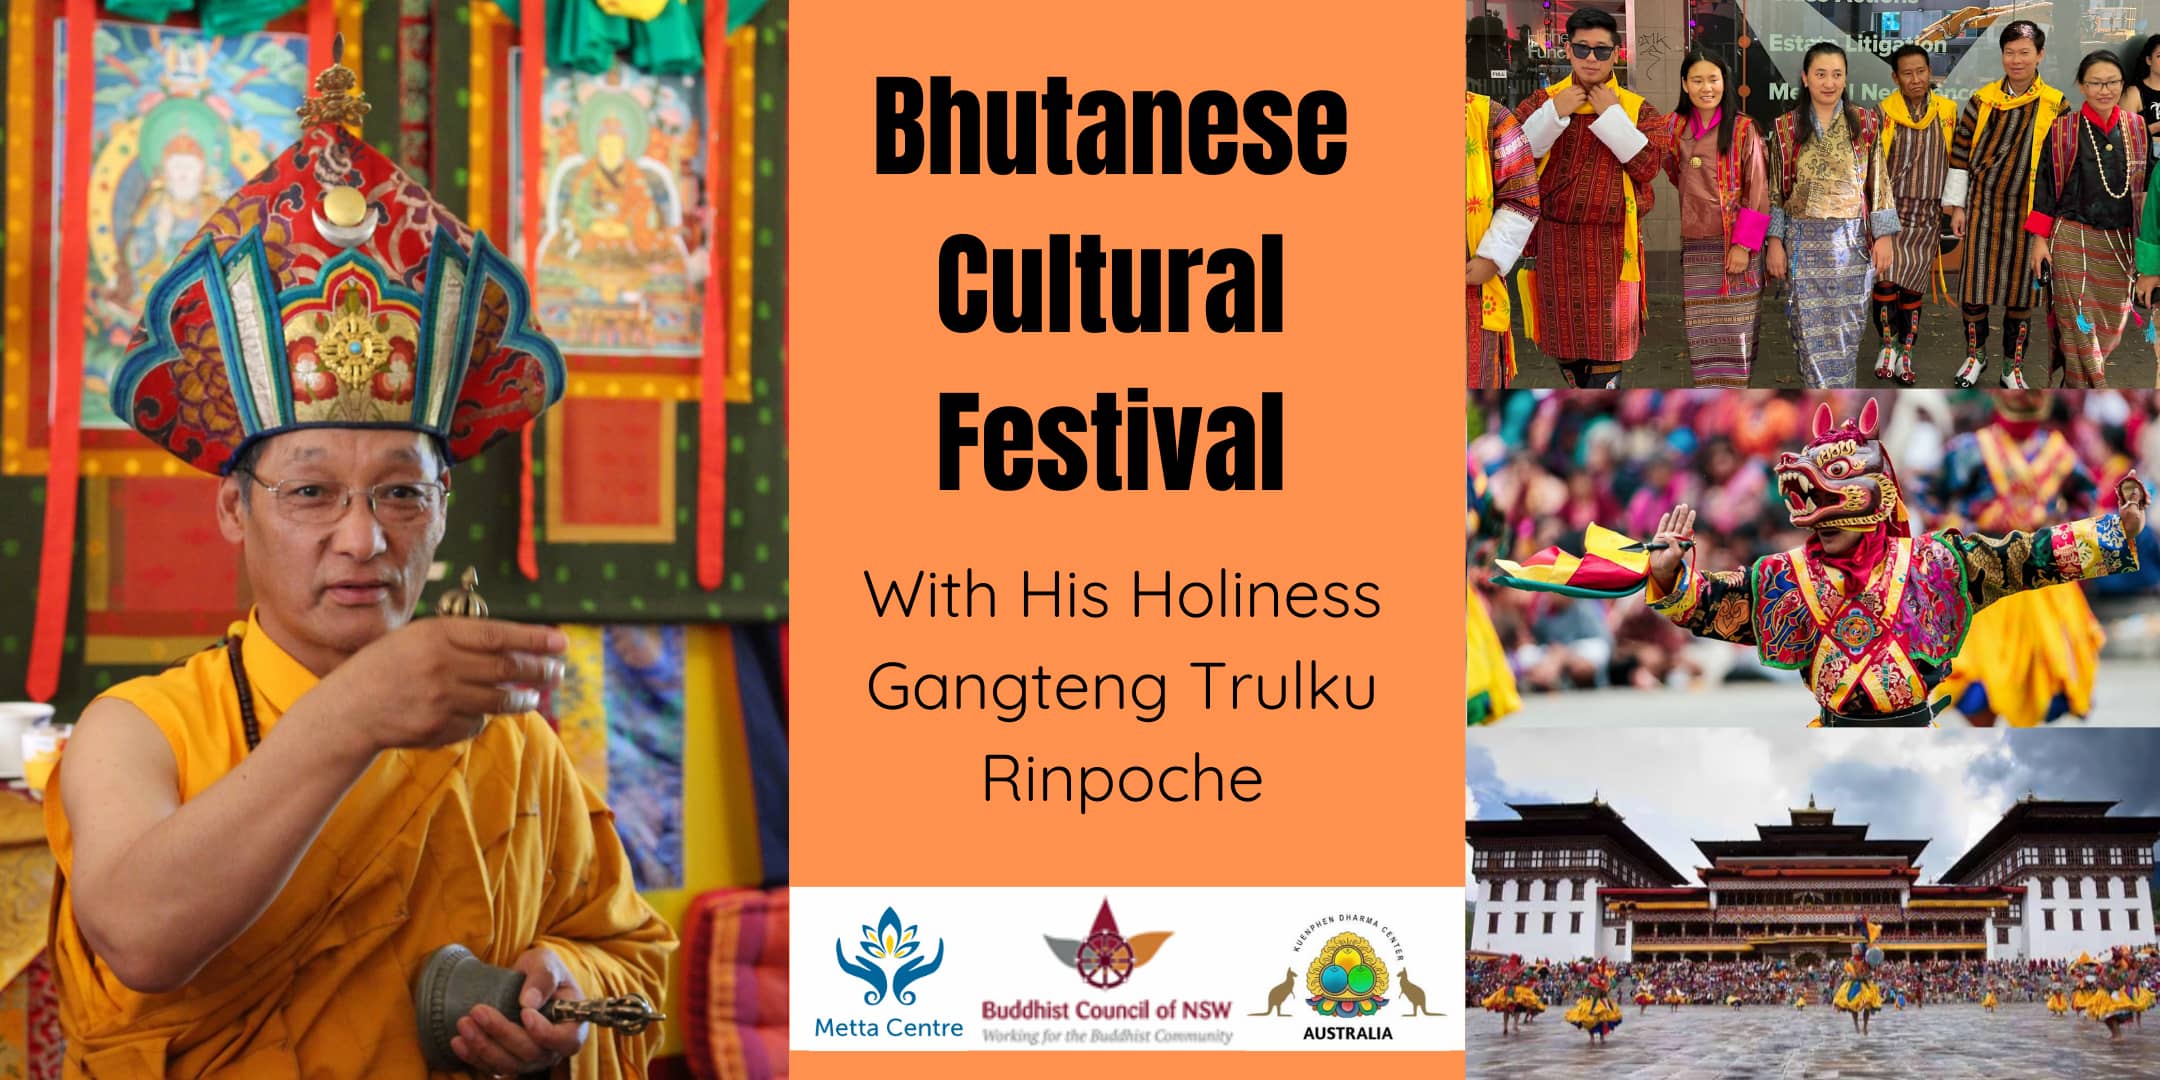 Bhutanese Cultural Festival with H. H. Gangteng Tulku Rinpoche (from Bhutan)